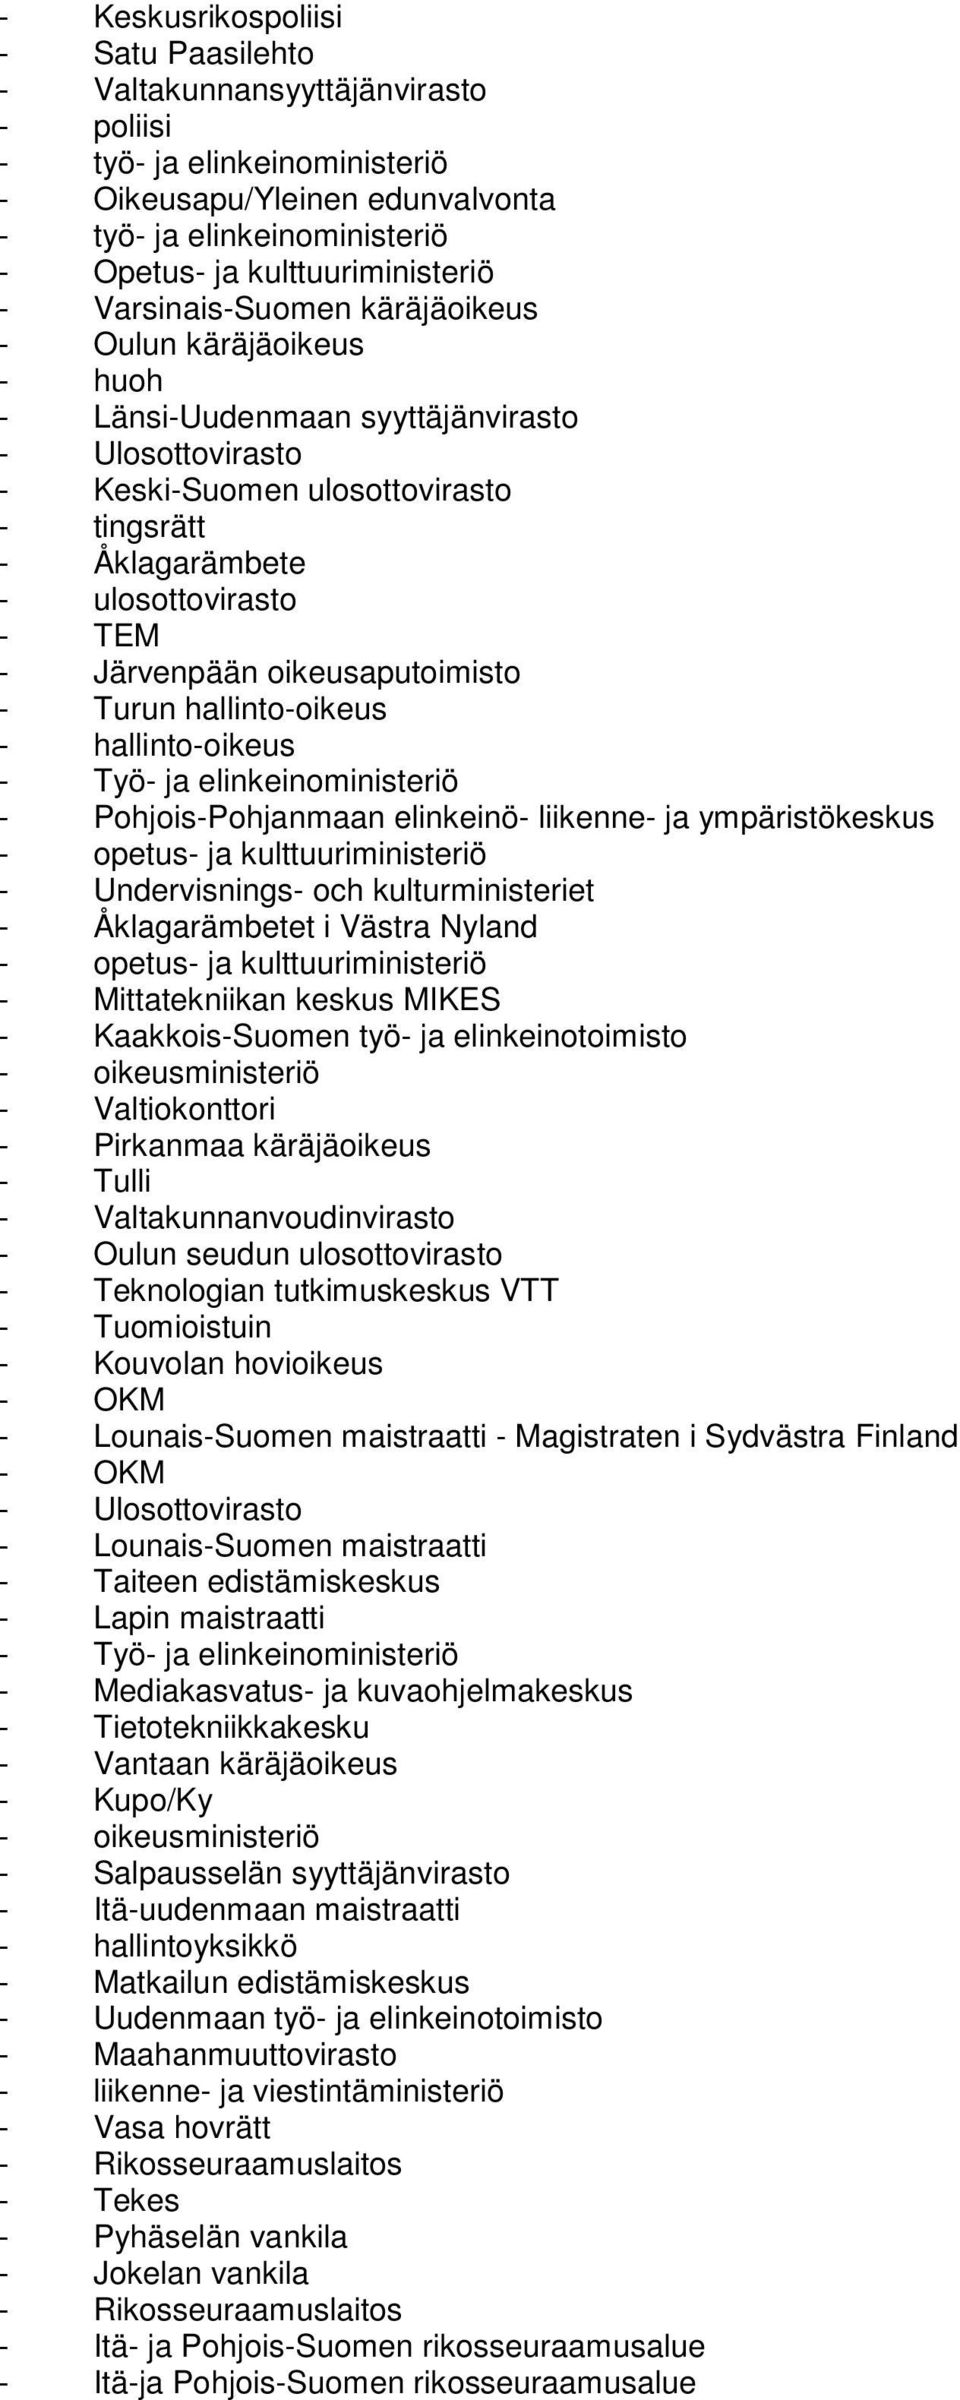 ulosottovirasto - TEM - Järvenpään oikeusaputoimisto - Turun hallinto-oikeus - hallinto-oikeus - Työ- ja elinkeinoministeriö - Pohjois-Pohjanmaan elinkeinö- liikenne- ja ympäristökeskus - opetus- ja